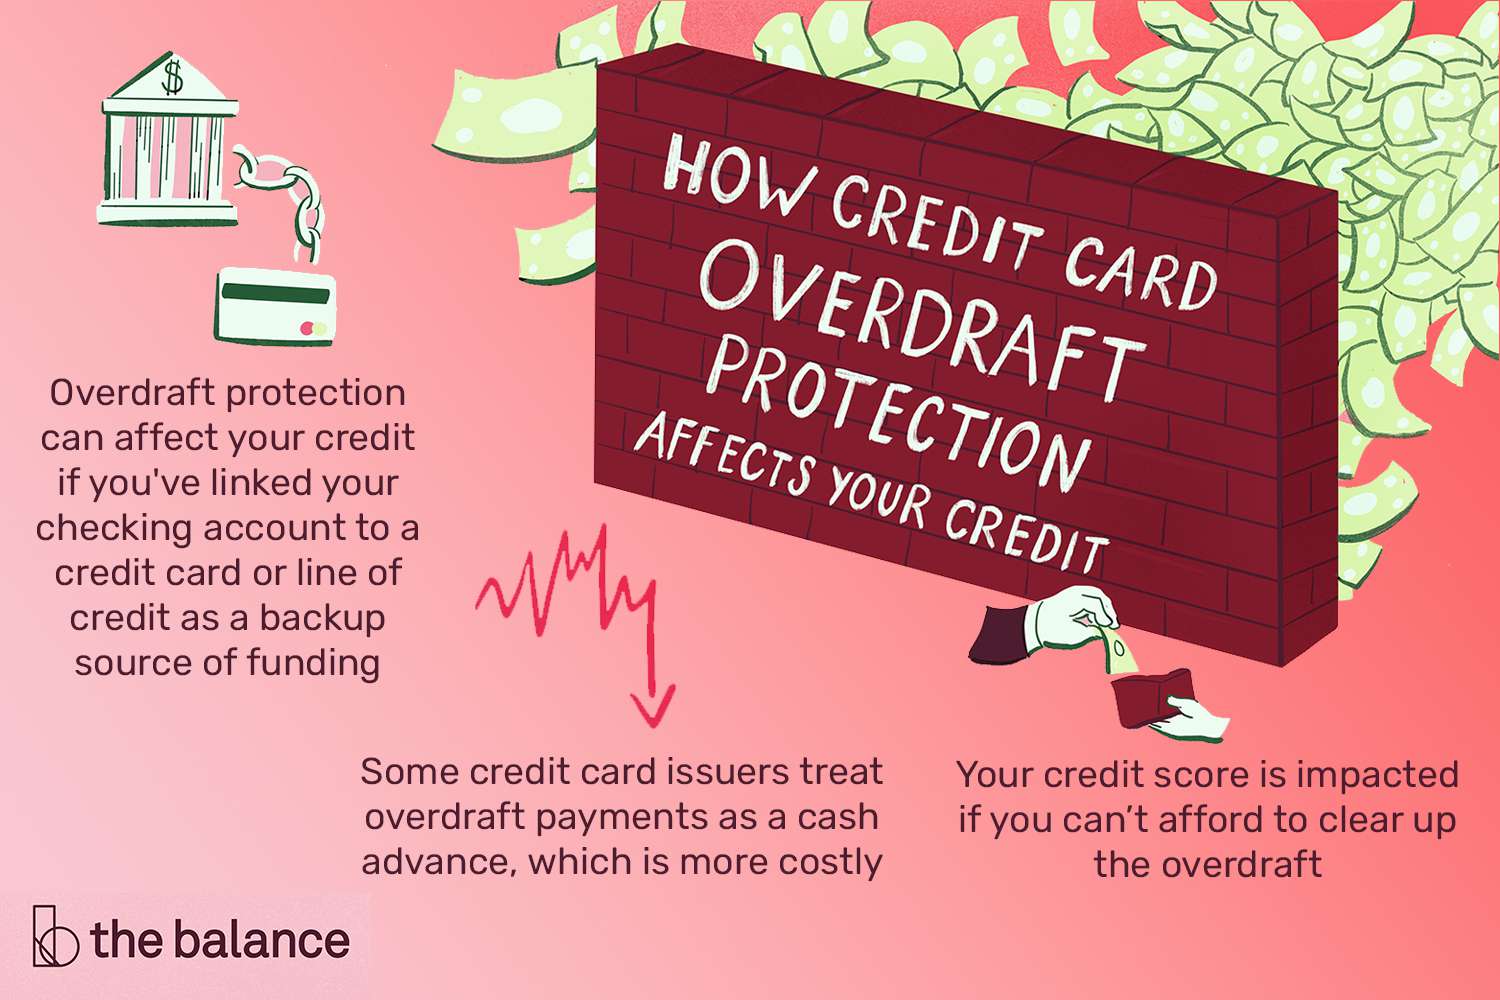 一堵砖墙挡住了一大堆文件，图标上有一座银行大楼与一张信用卡相连，有一个下降趋势曲线图，还有一只手从钱包里抽出一张账单，上面的标题写着“信用卡透支保护如何影响你的信用”，文字写着“如果你把支票账户与信用卡或信用额度挂钩作为备用资金来源，透支保护会影响你的信用;一些信用卡发卡机构将透支付款视为现金预付，这成本更高;如果你canâ不能偿还透支，你的信用评分就会受到影响。”